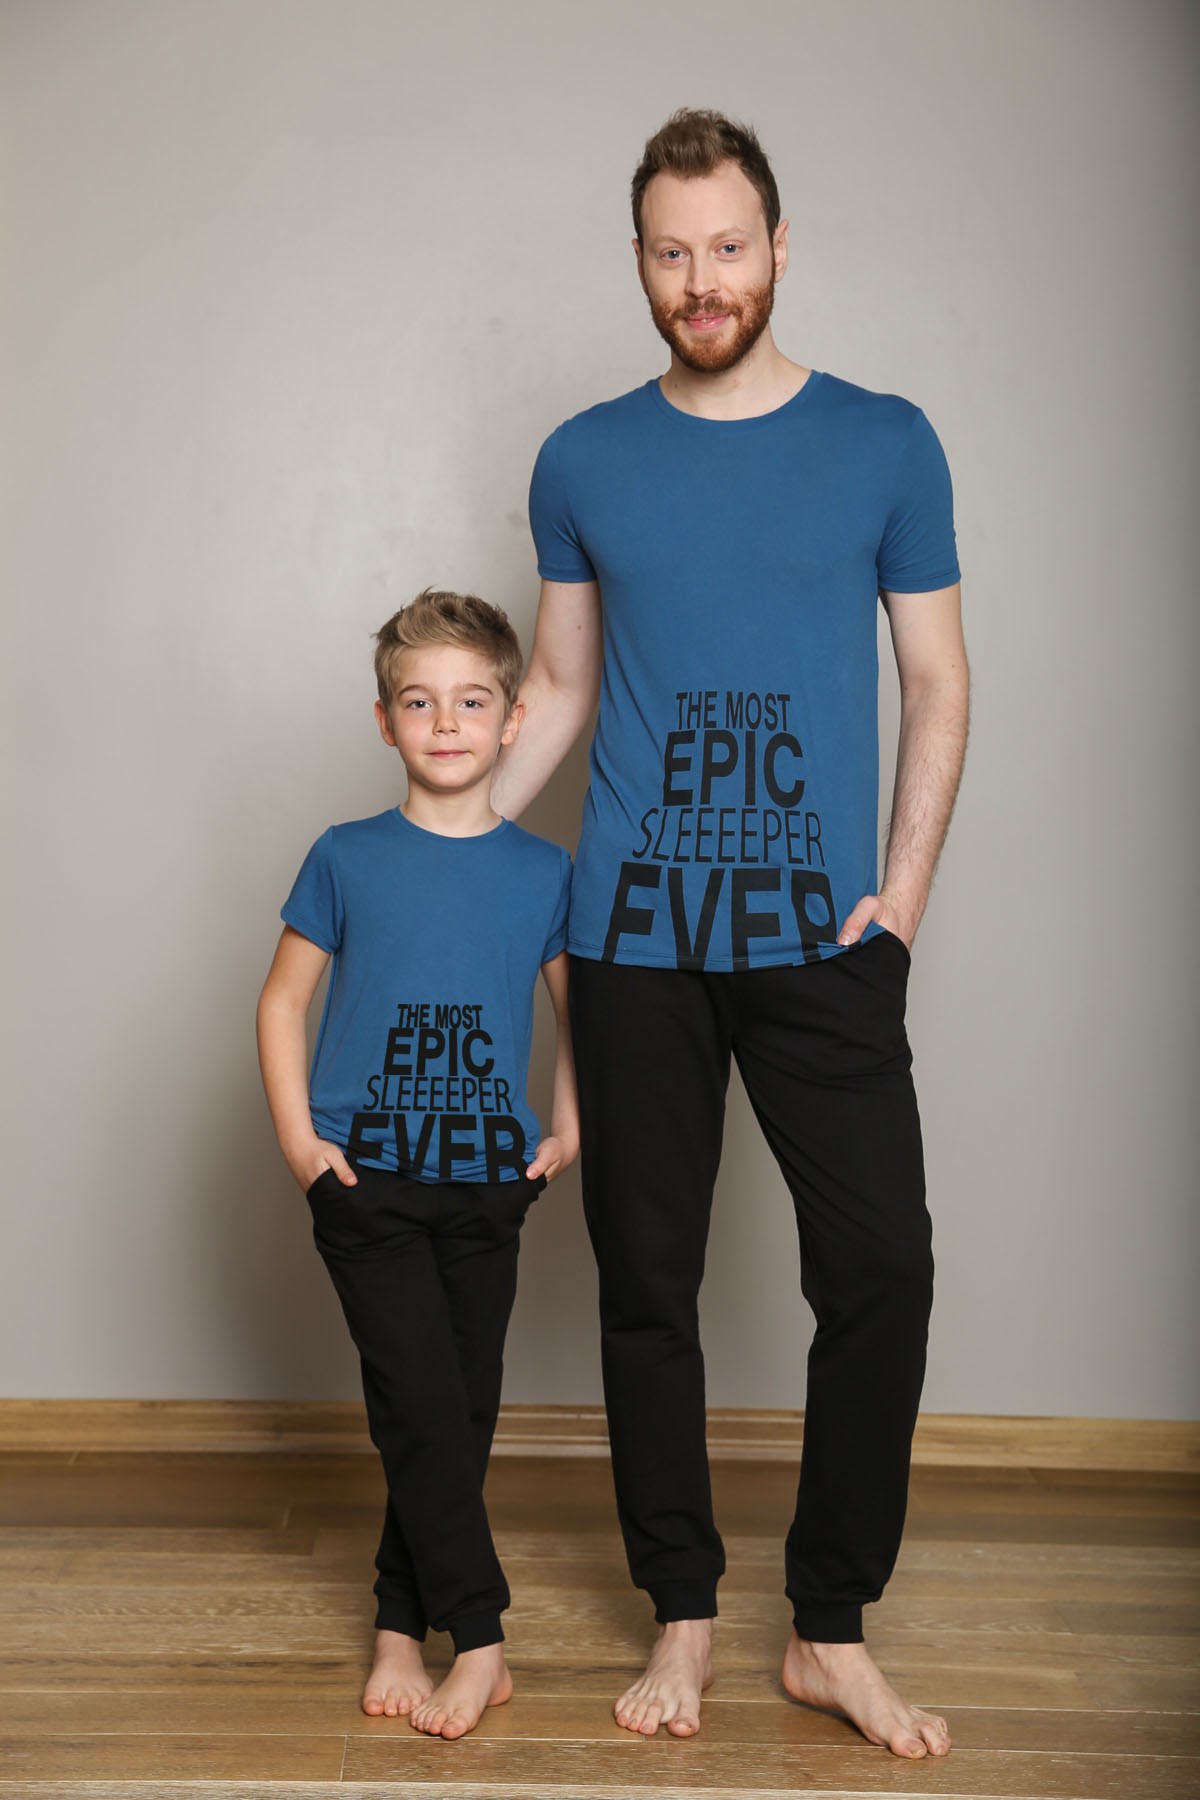 Epic Pijama Takımı.Baba Oğul ayrı satılır